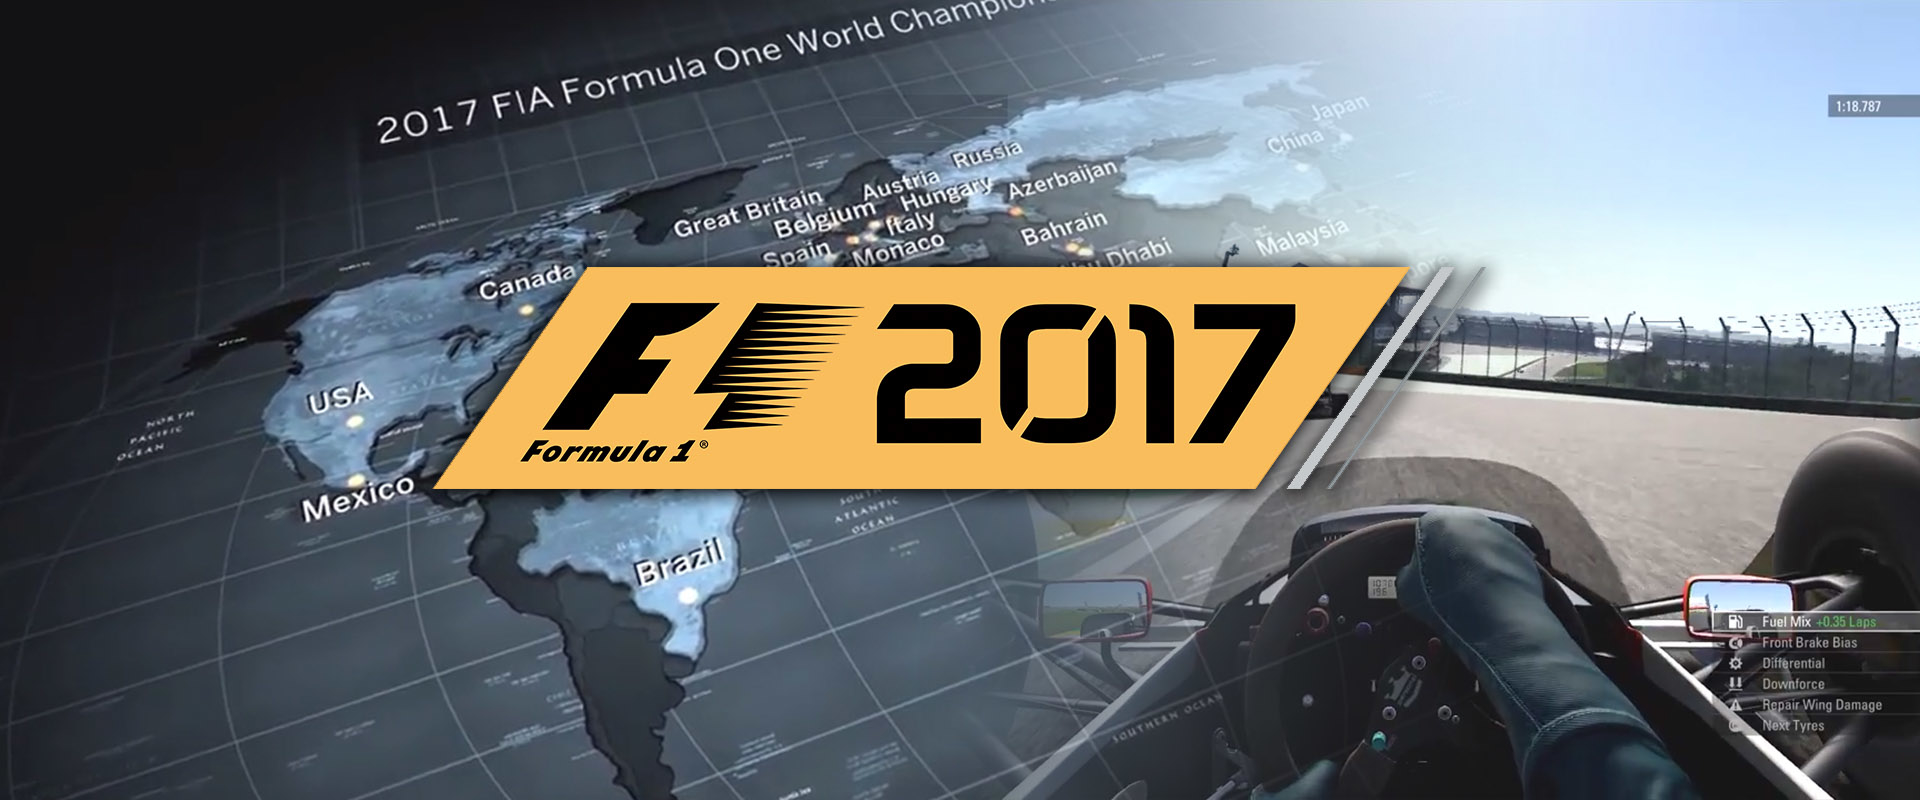 Újdonságok az F1 2017-ben!